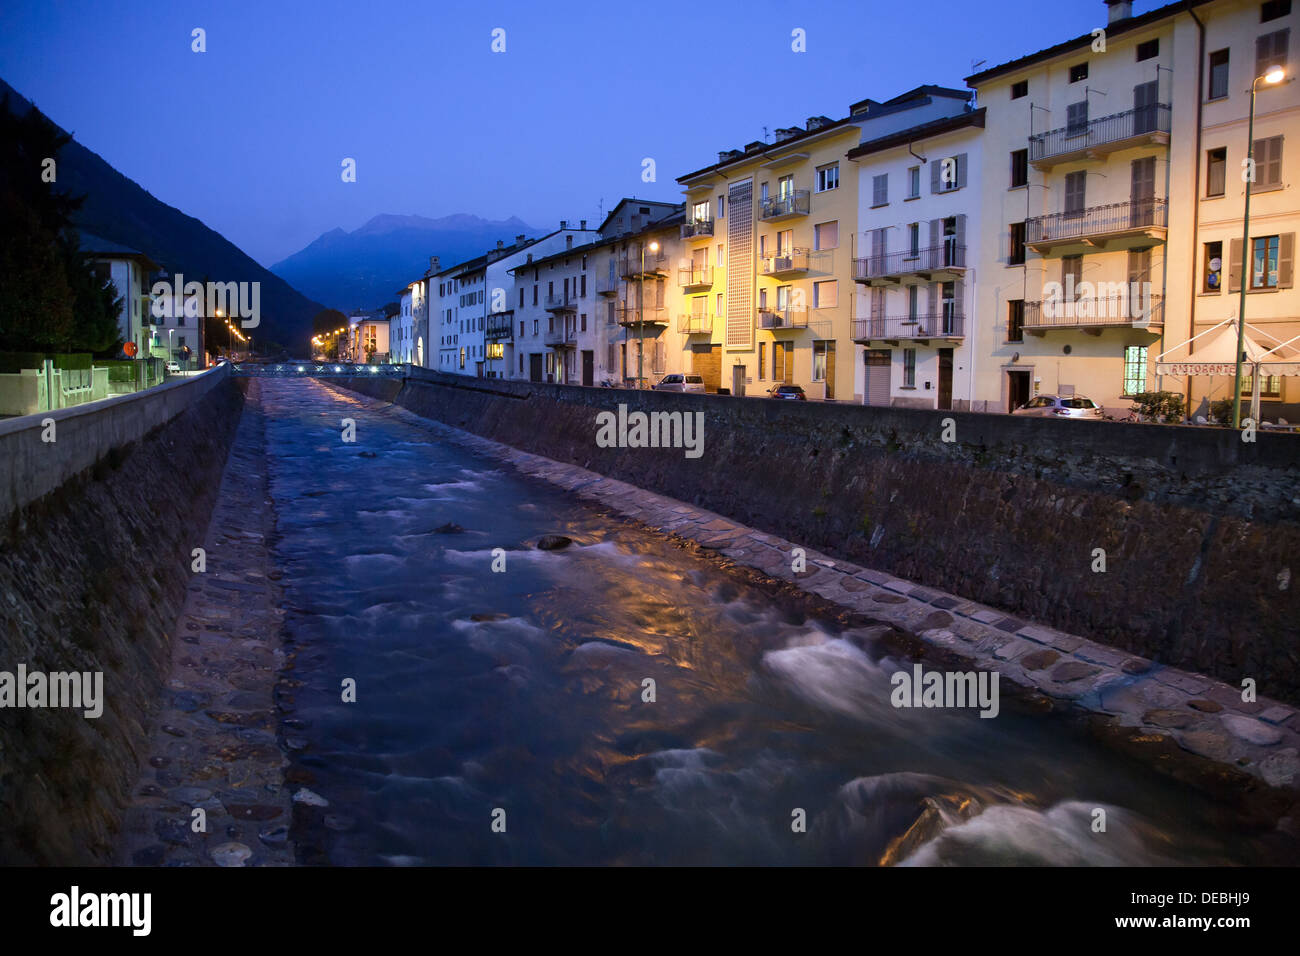 Tirano, Italy, dada River at dusk Stock Photo